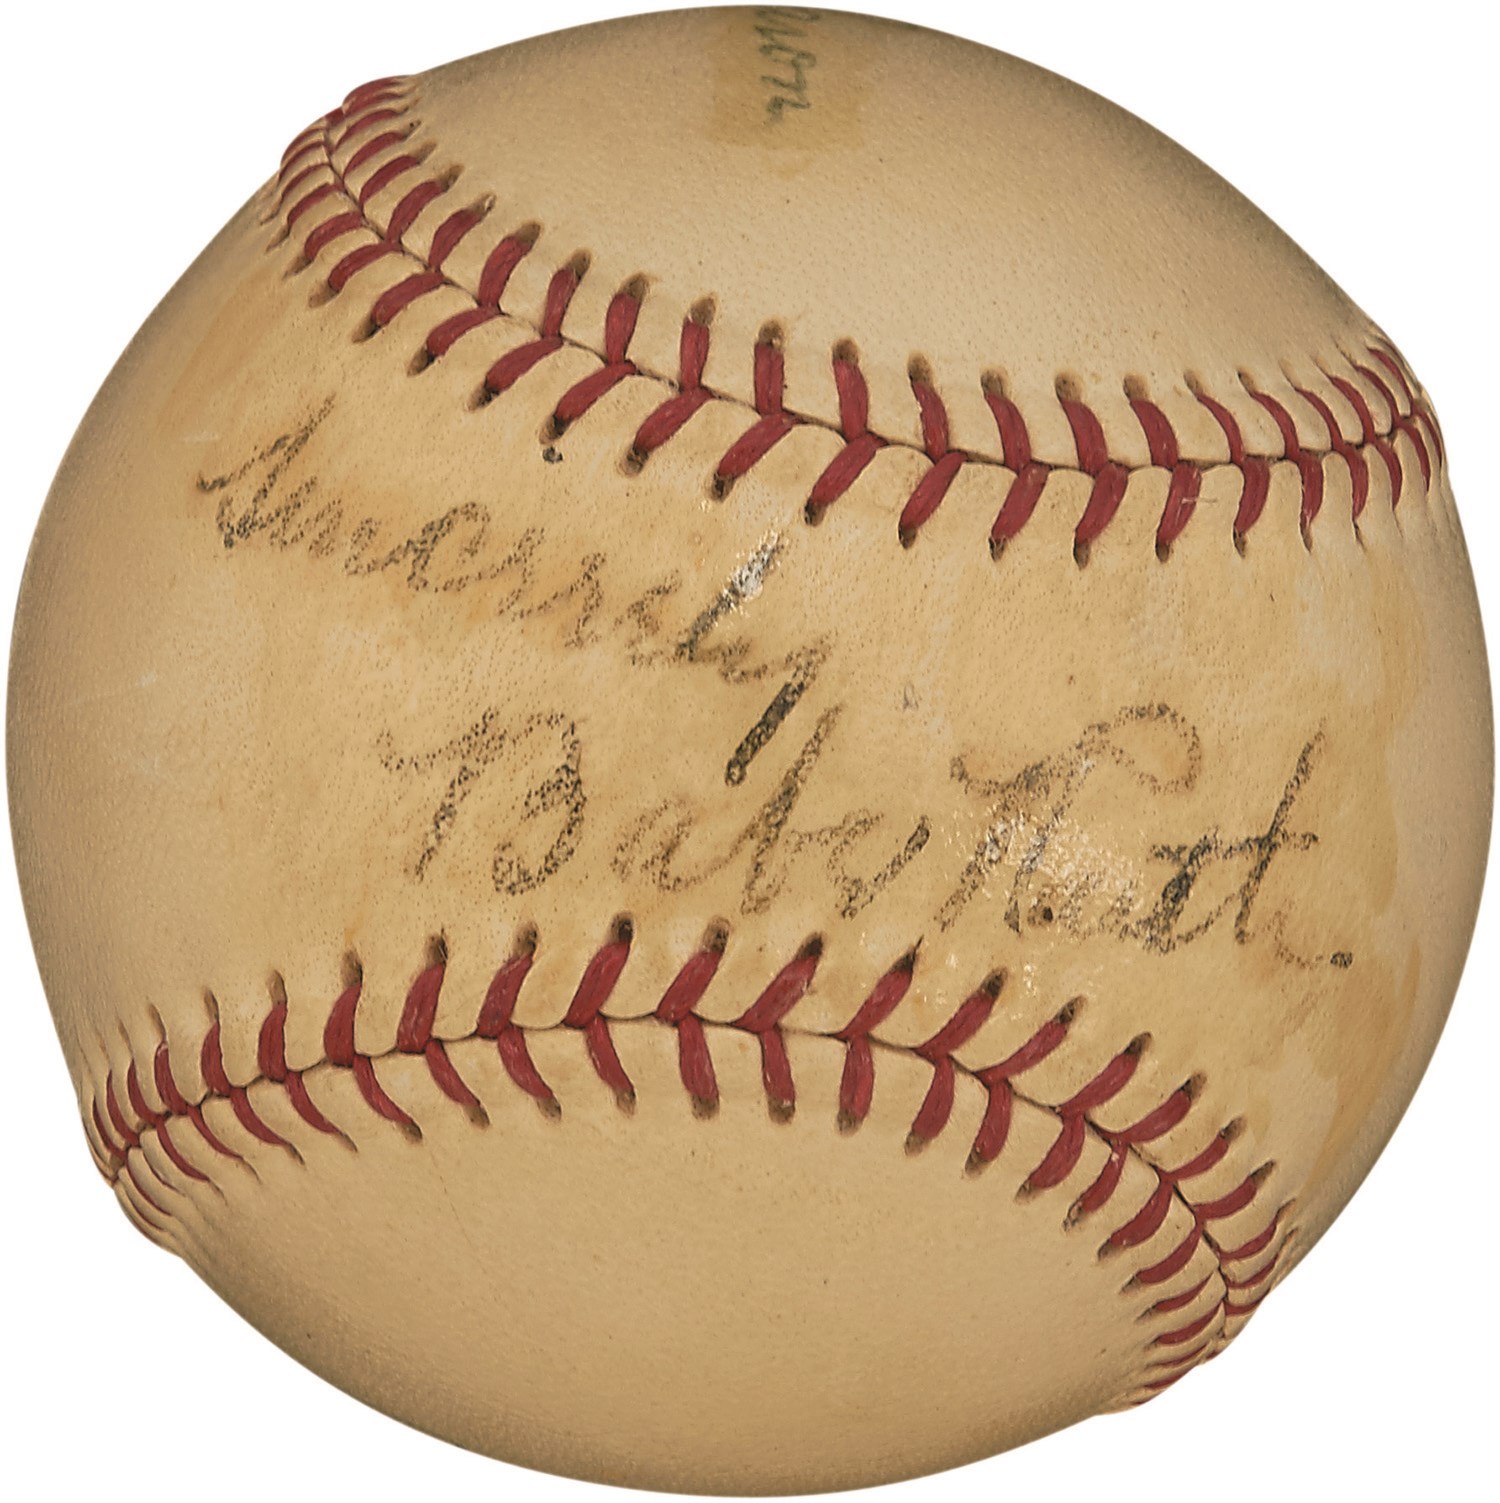 Holy Trinity Signed Baseball: Babe Ruth, Roger Maris & Hank (PSA)